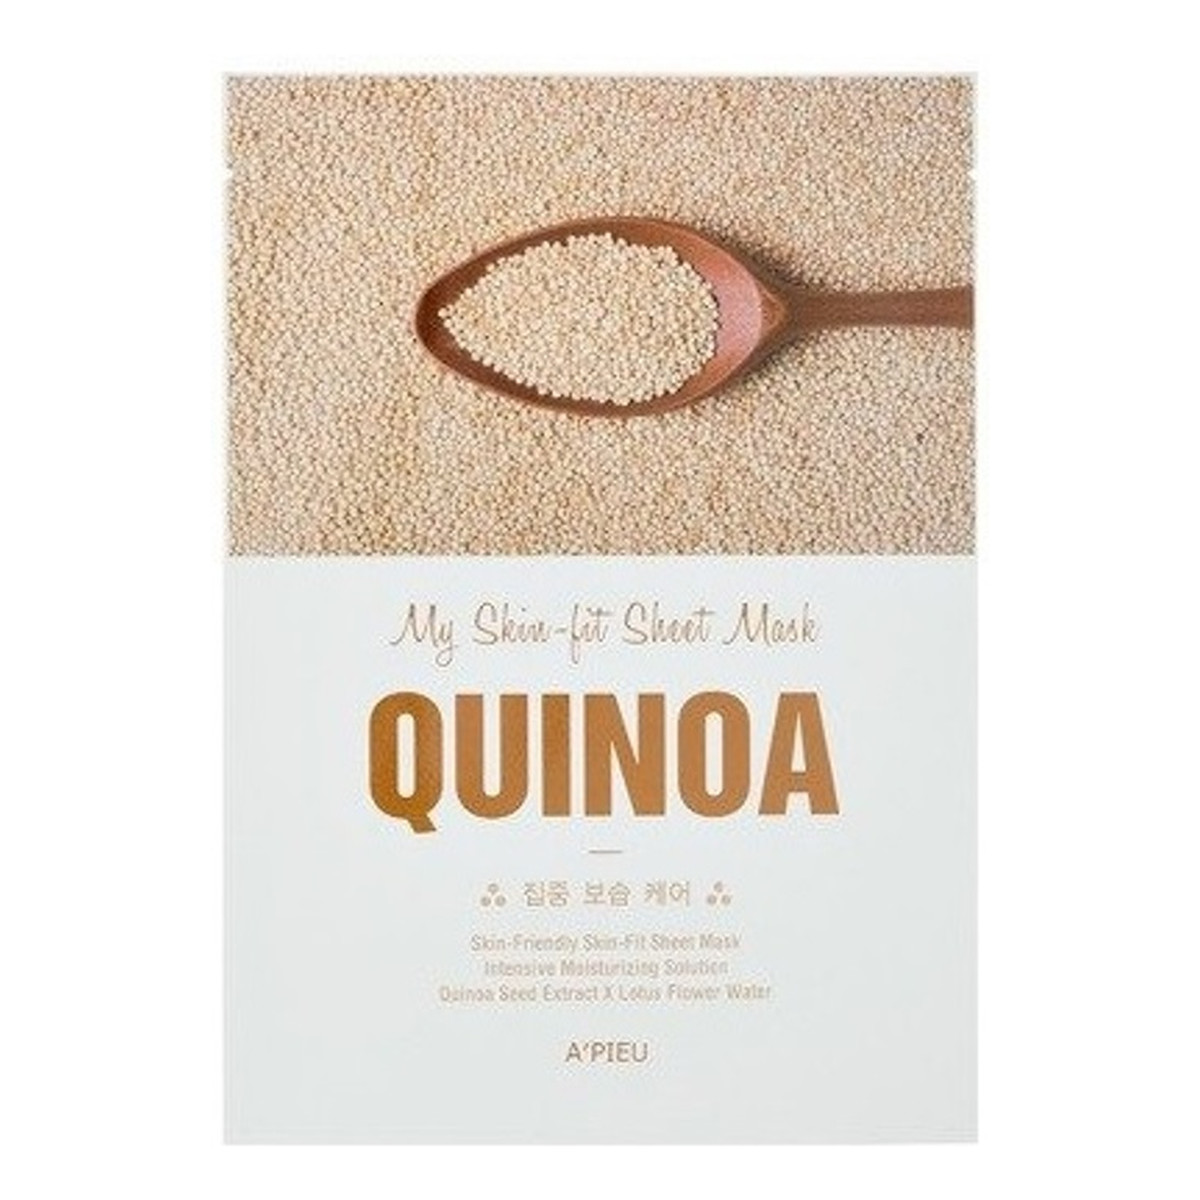 A'Pieu My Skin-Fit nawilżająco-ujędrniająca maseczka w płachcie Quinoa 25g